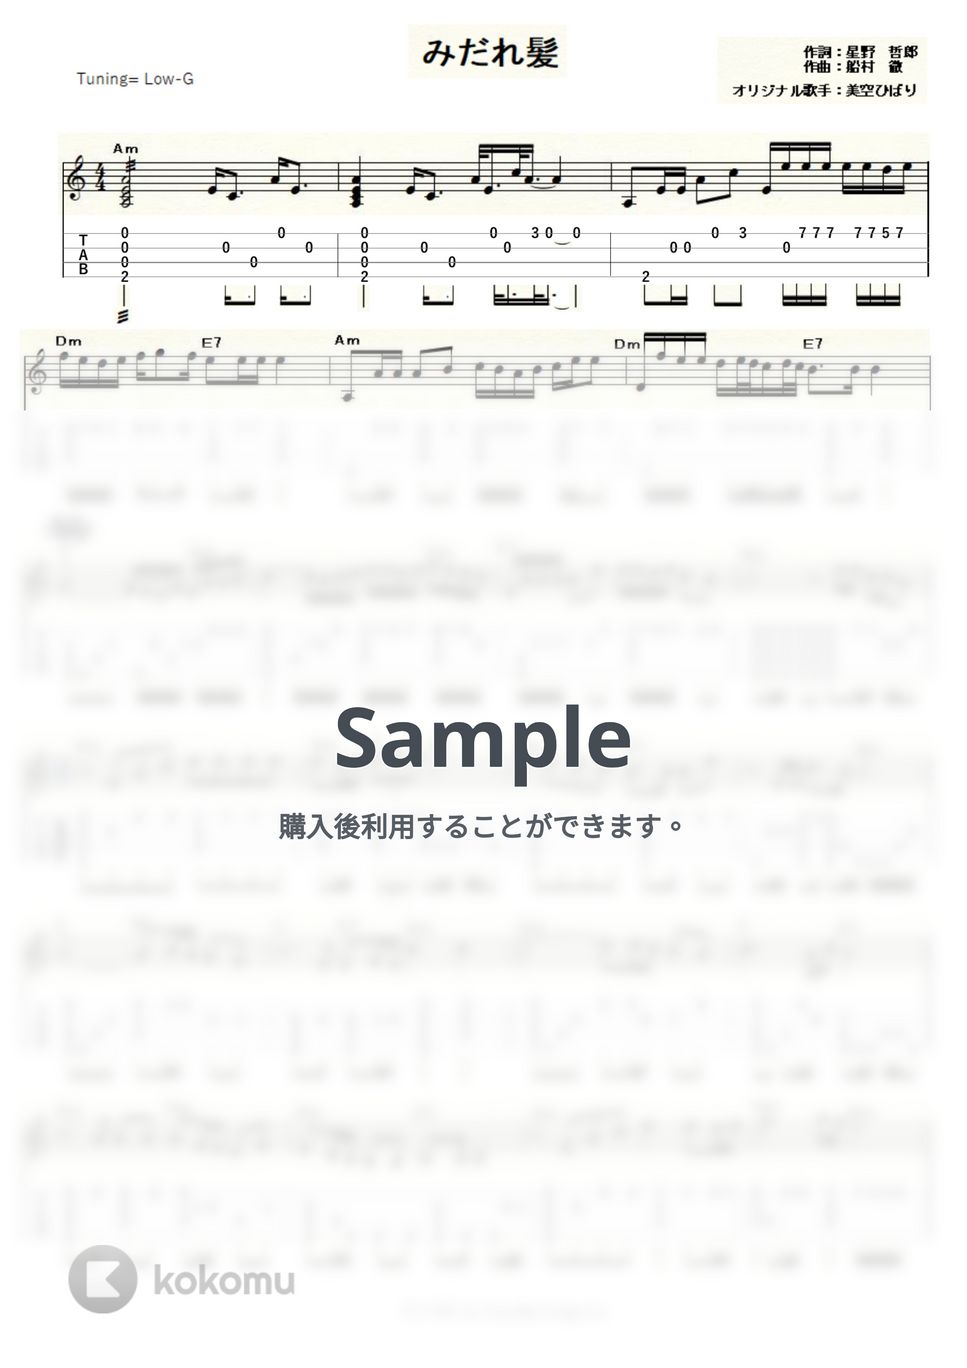 美空ひばり - みだれ髪 (ｳｸﾚﾚｿﾛ / Low-G / 上級) by ukulelepapa